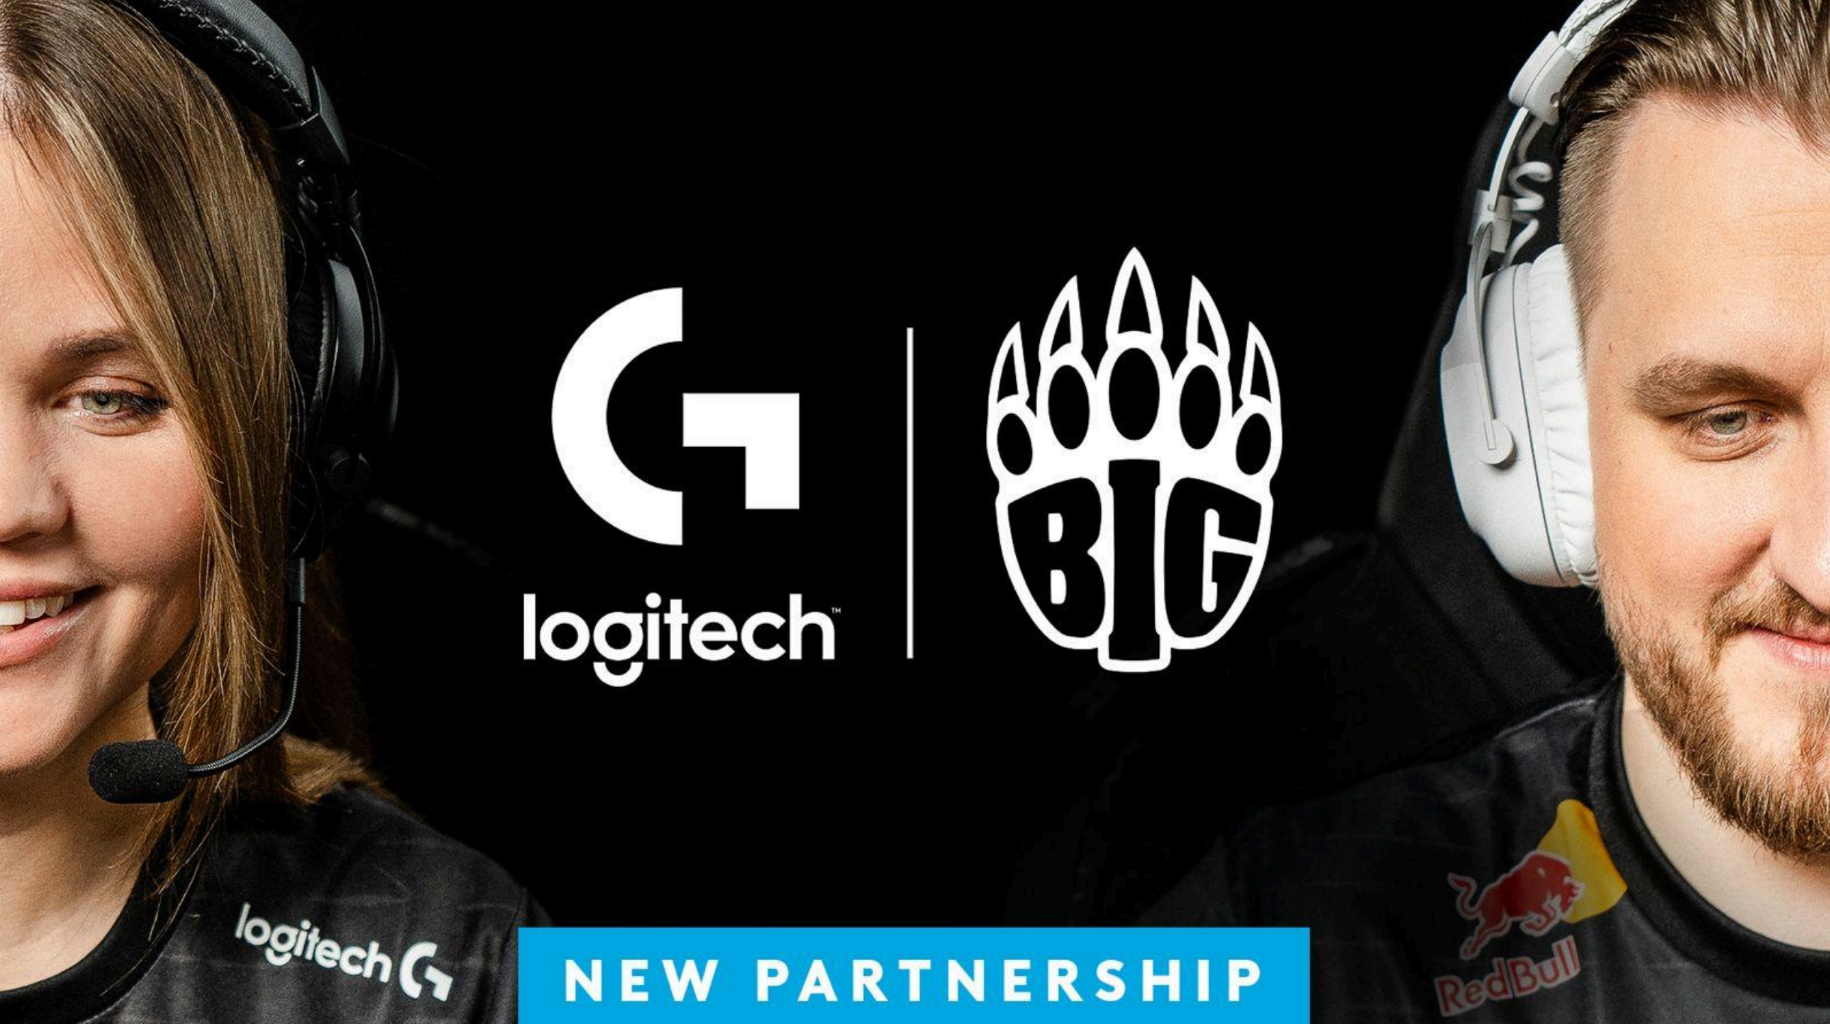 Den tyske esportsorganisation BIG har annonceret et flerårigt partnerskab med Logitech G